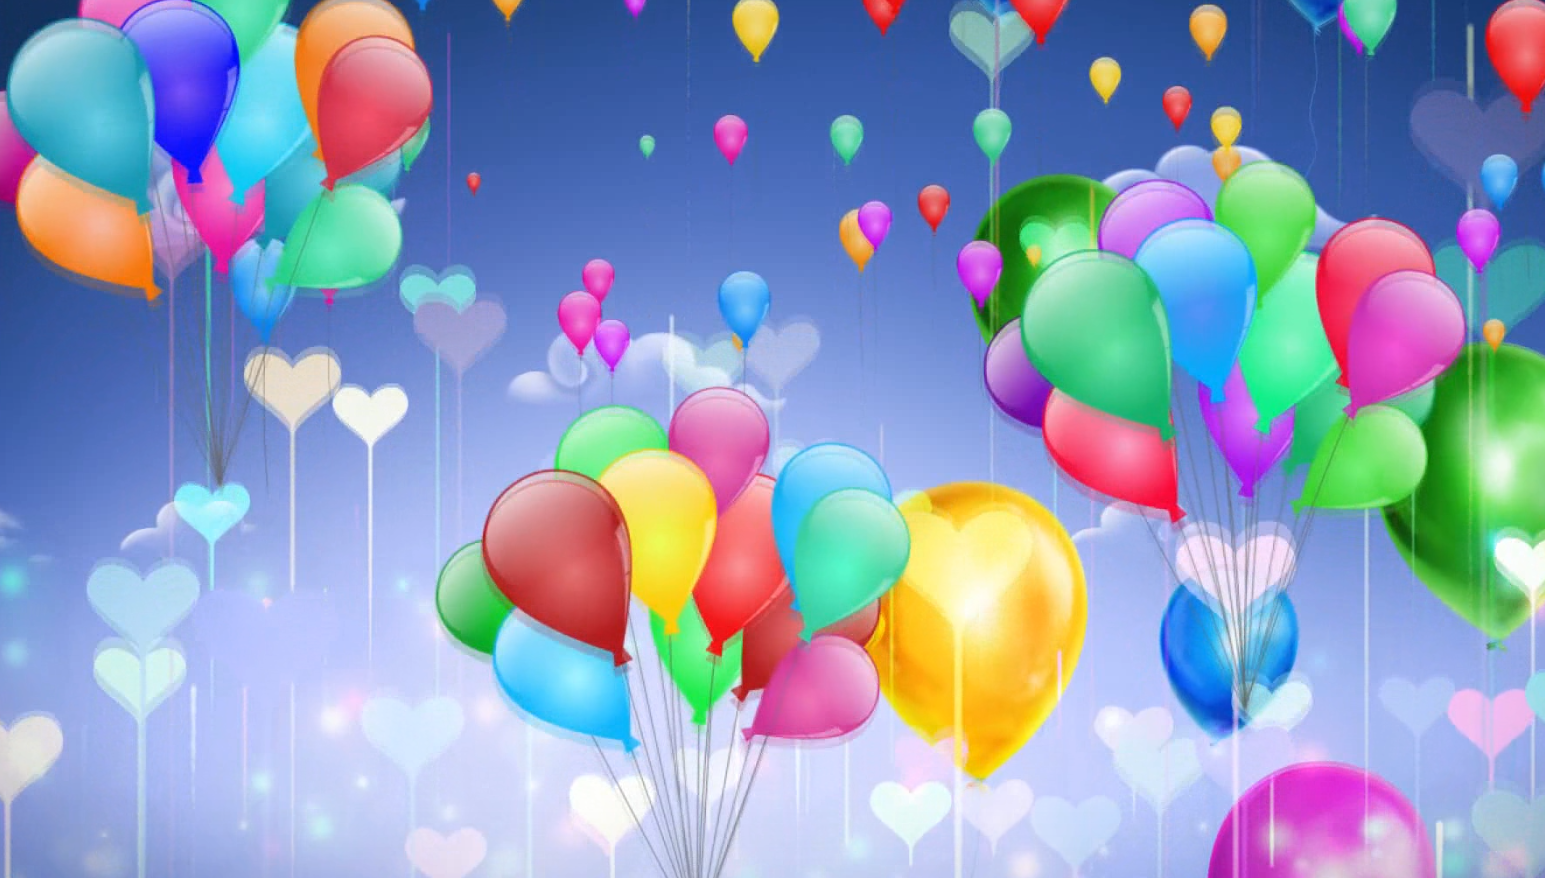 法国洛林热气球节 彩色热气球缤纷升空唯美至极_国际新闻_环球网